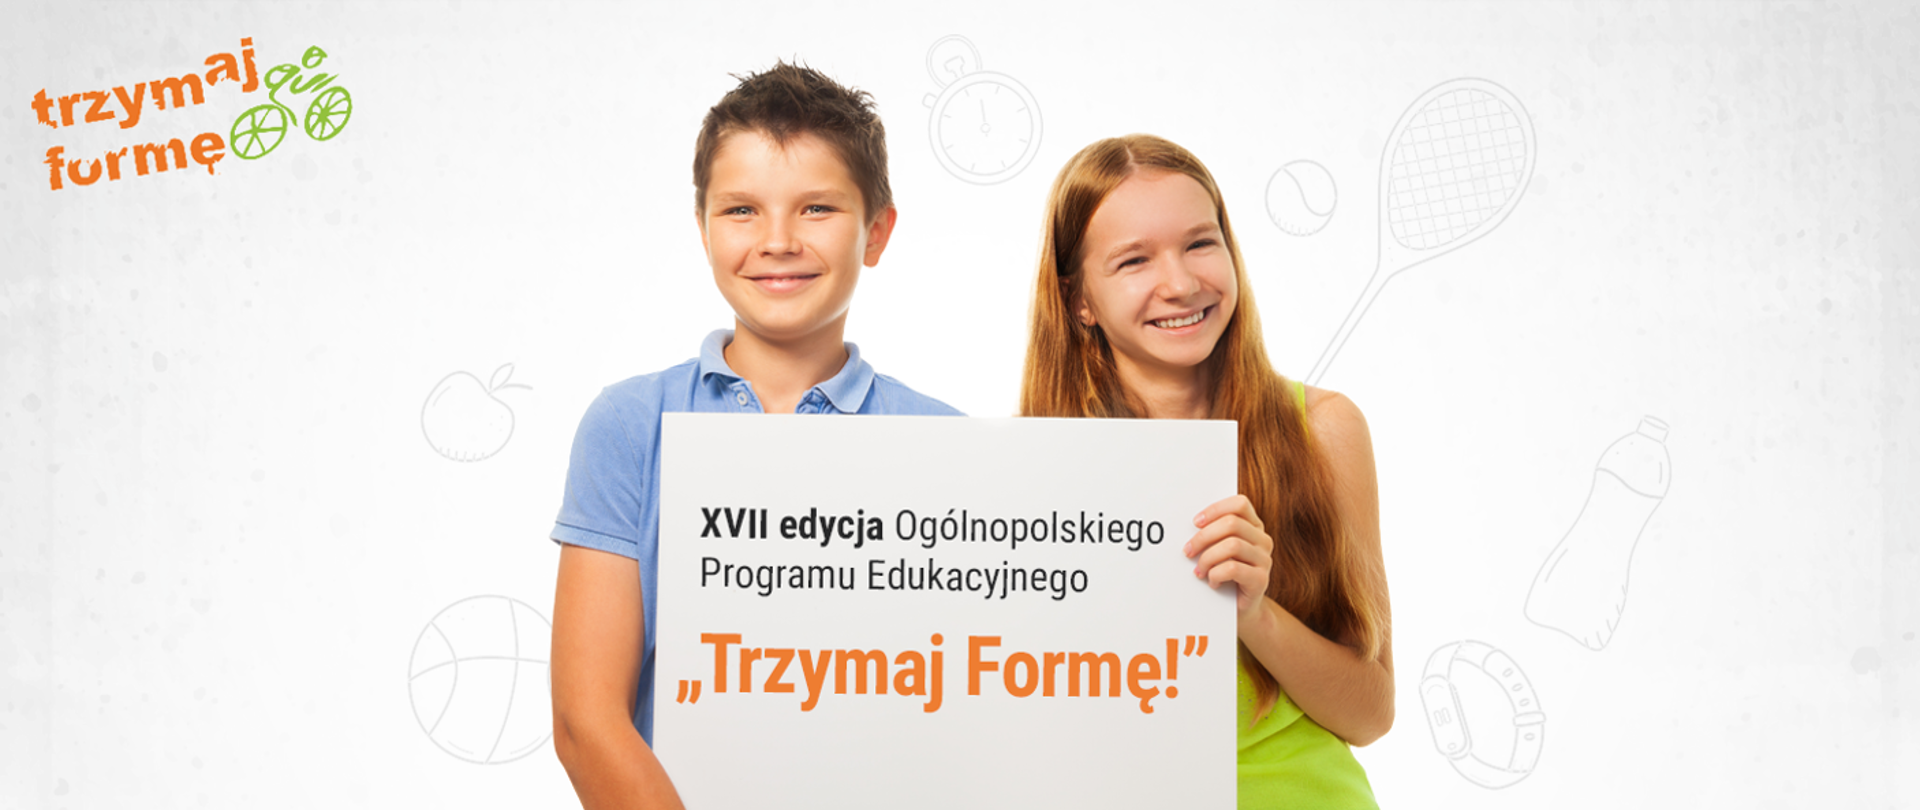 Baner reklamujący XUII edycję programu "Trzymaj Formę"